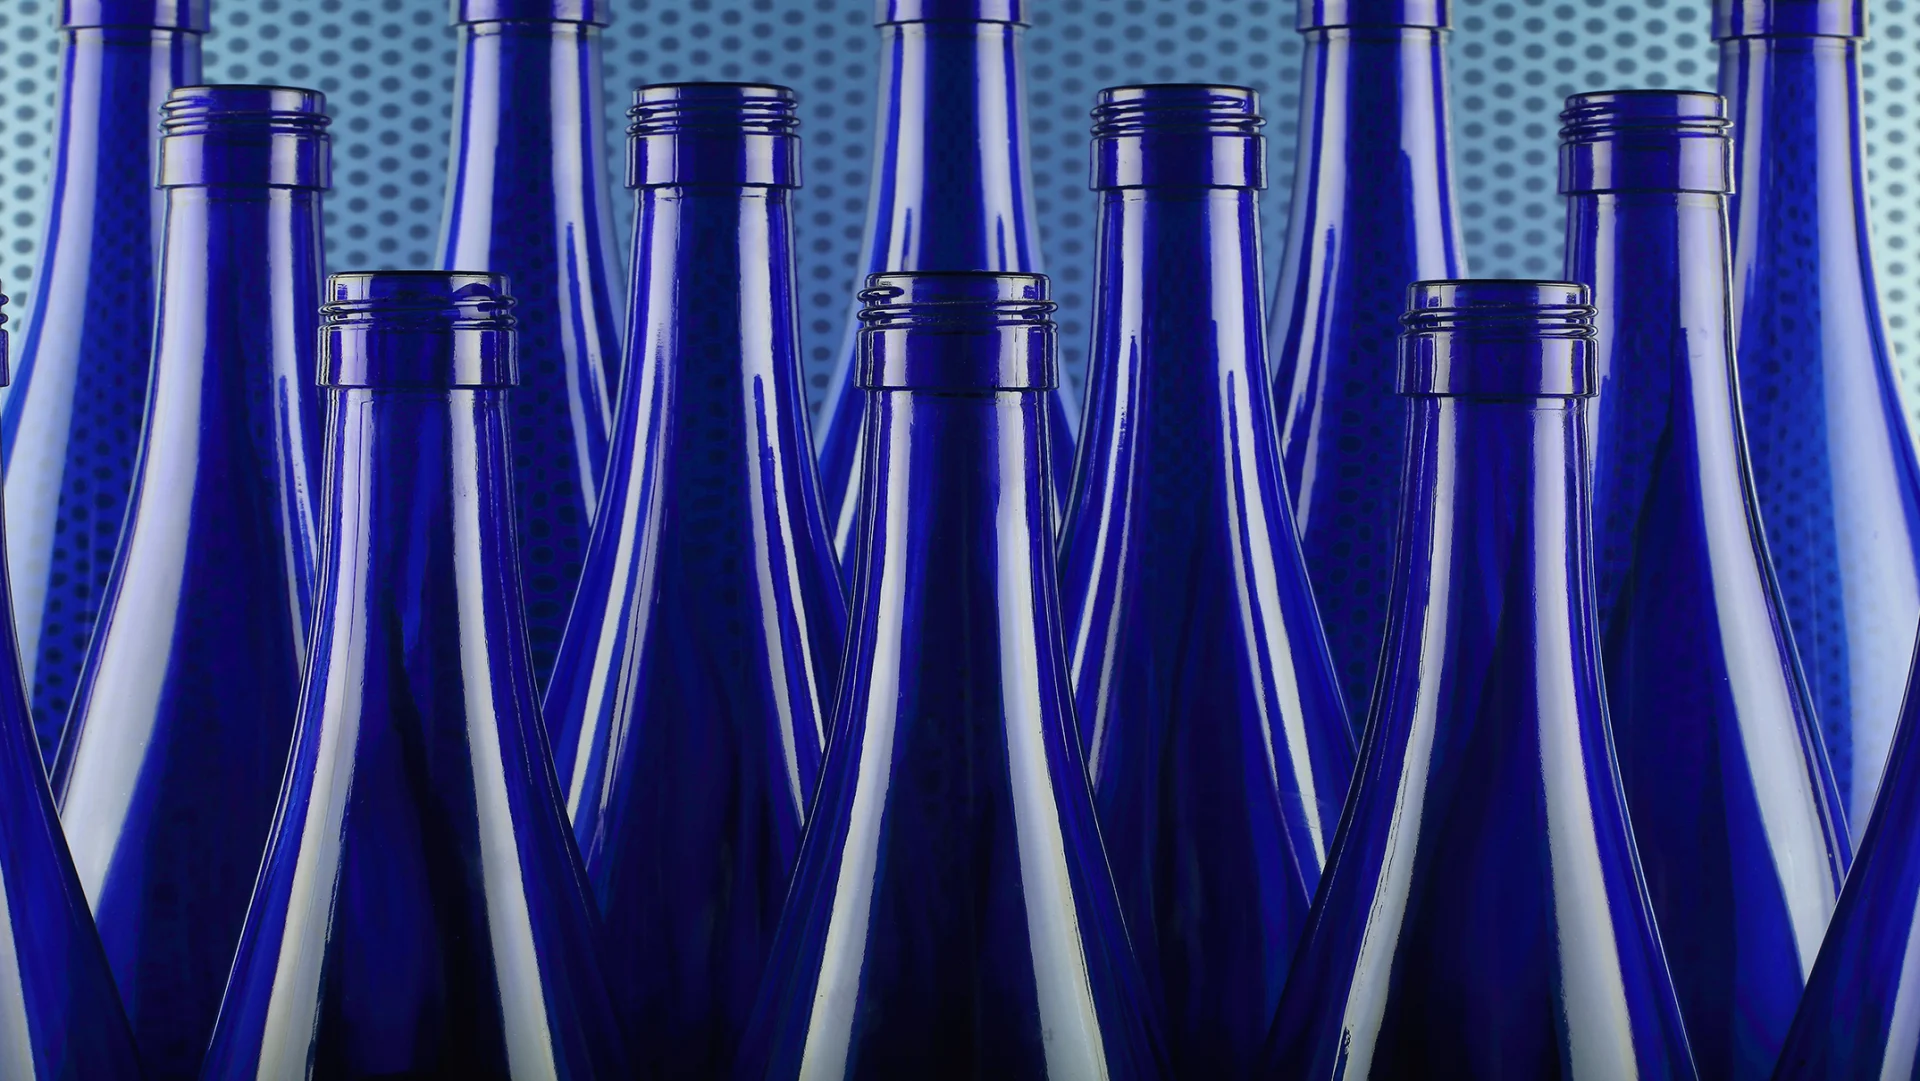 Blaue Flaschen aus Glas stehen eng nebeneinander